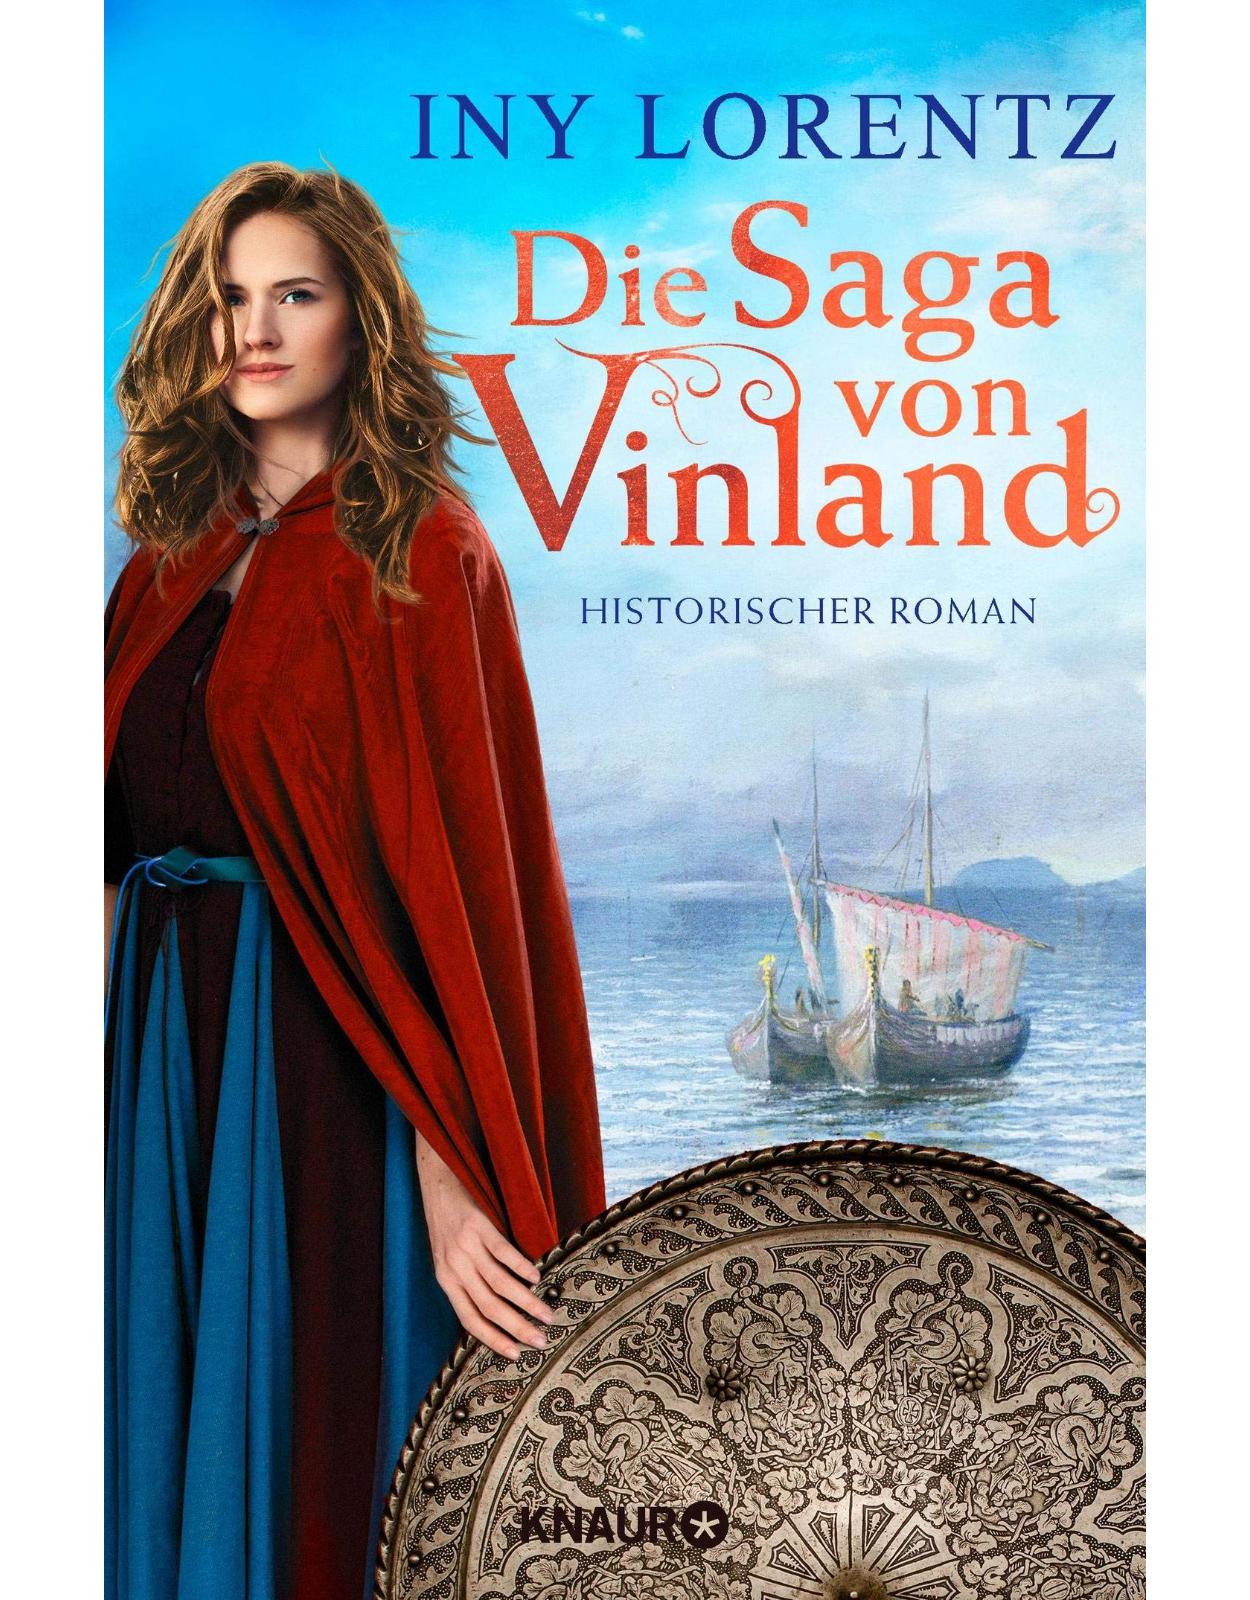 Die Saga von Vinland: Historischer Roman